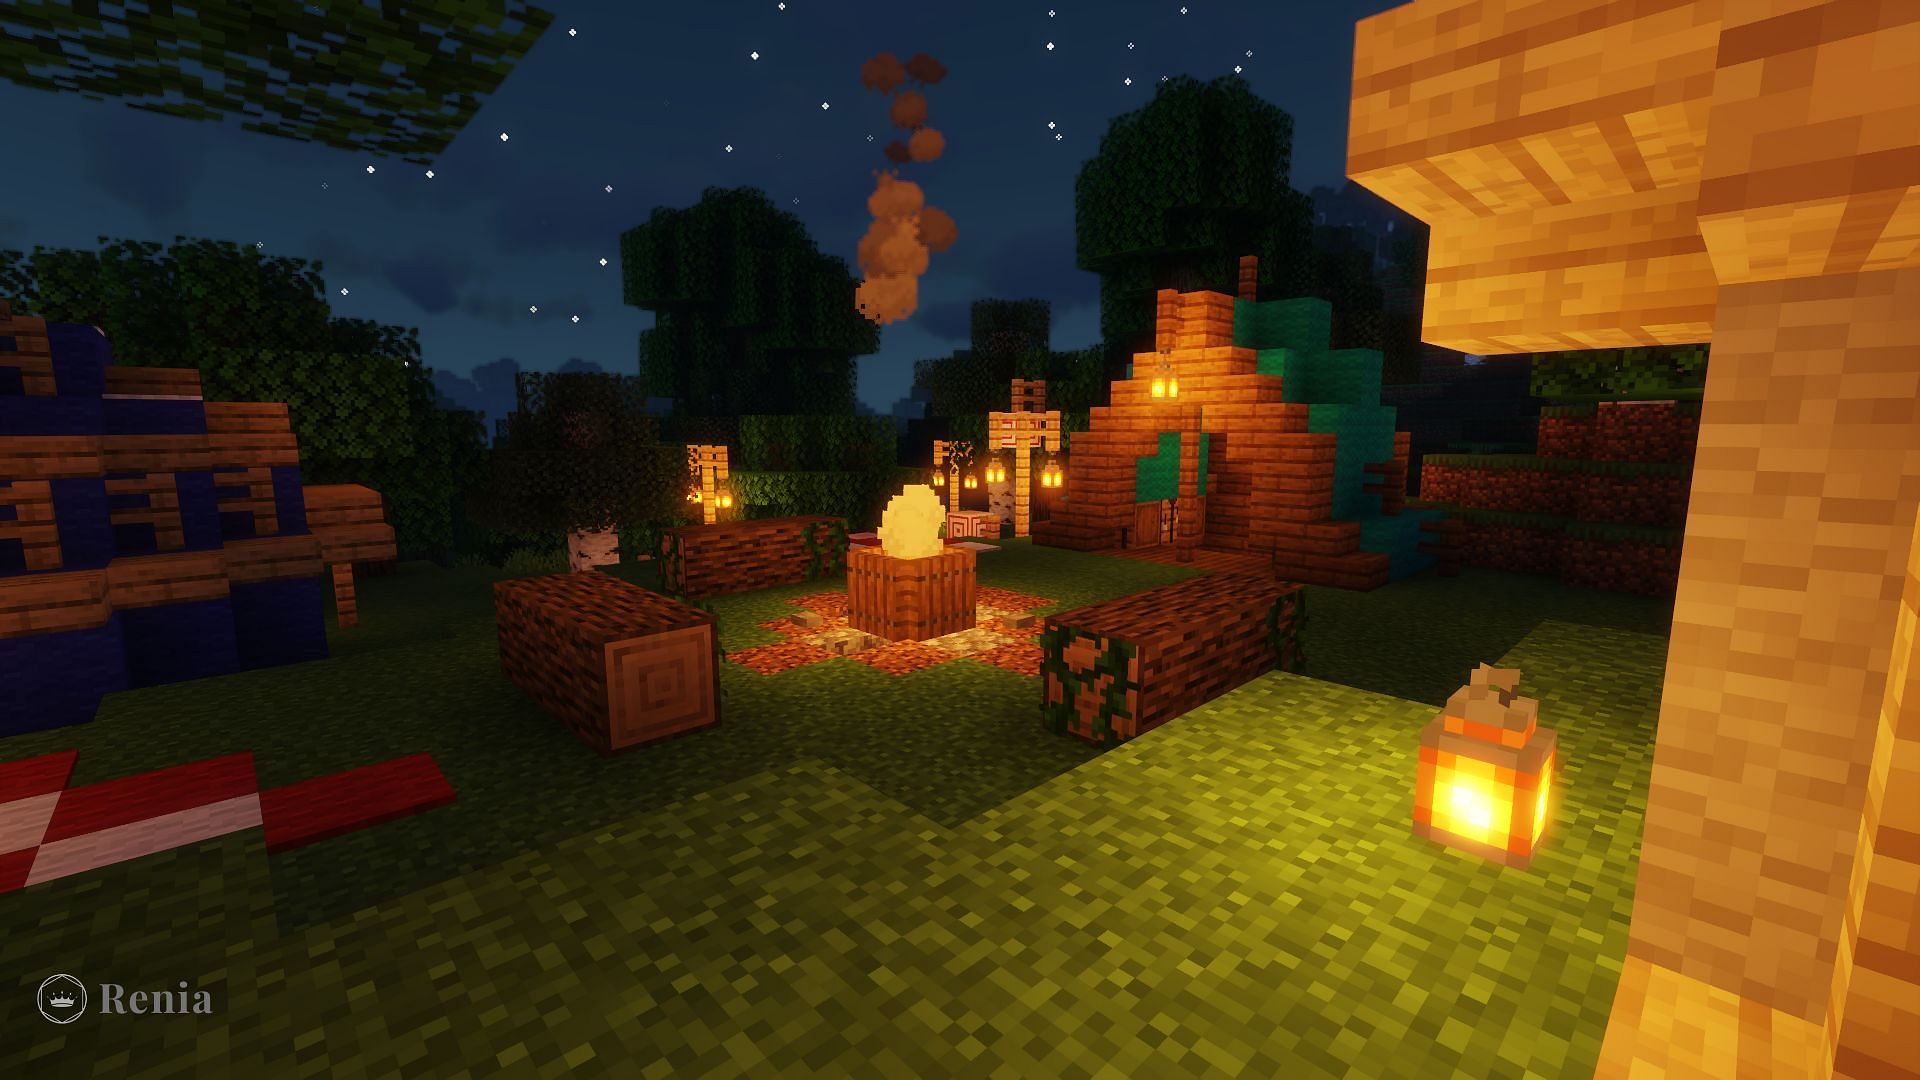 A cozy campfire lights this camping site (Image via u/_Renia_/Reddit)